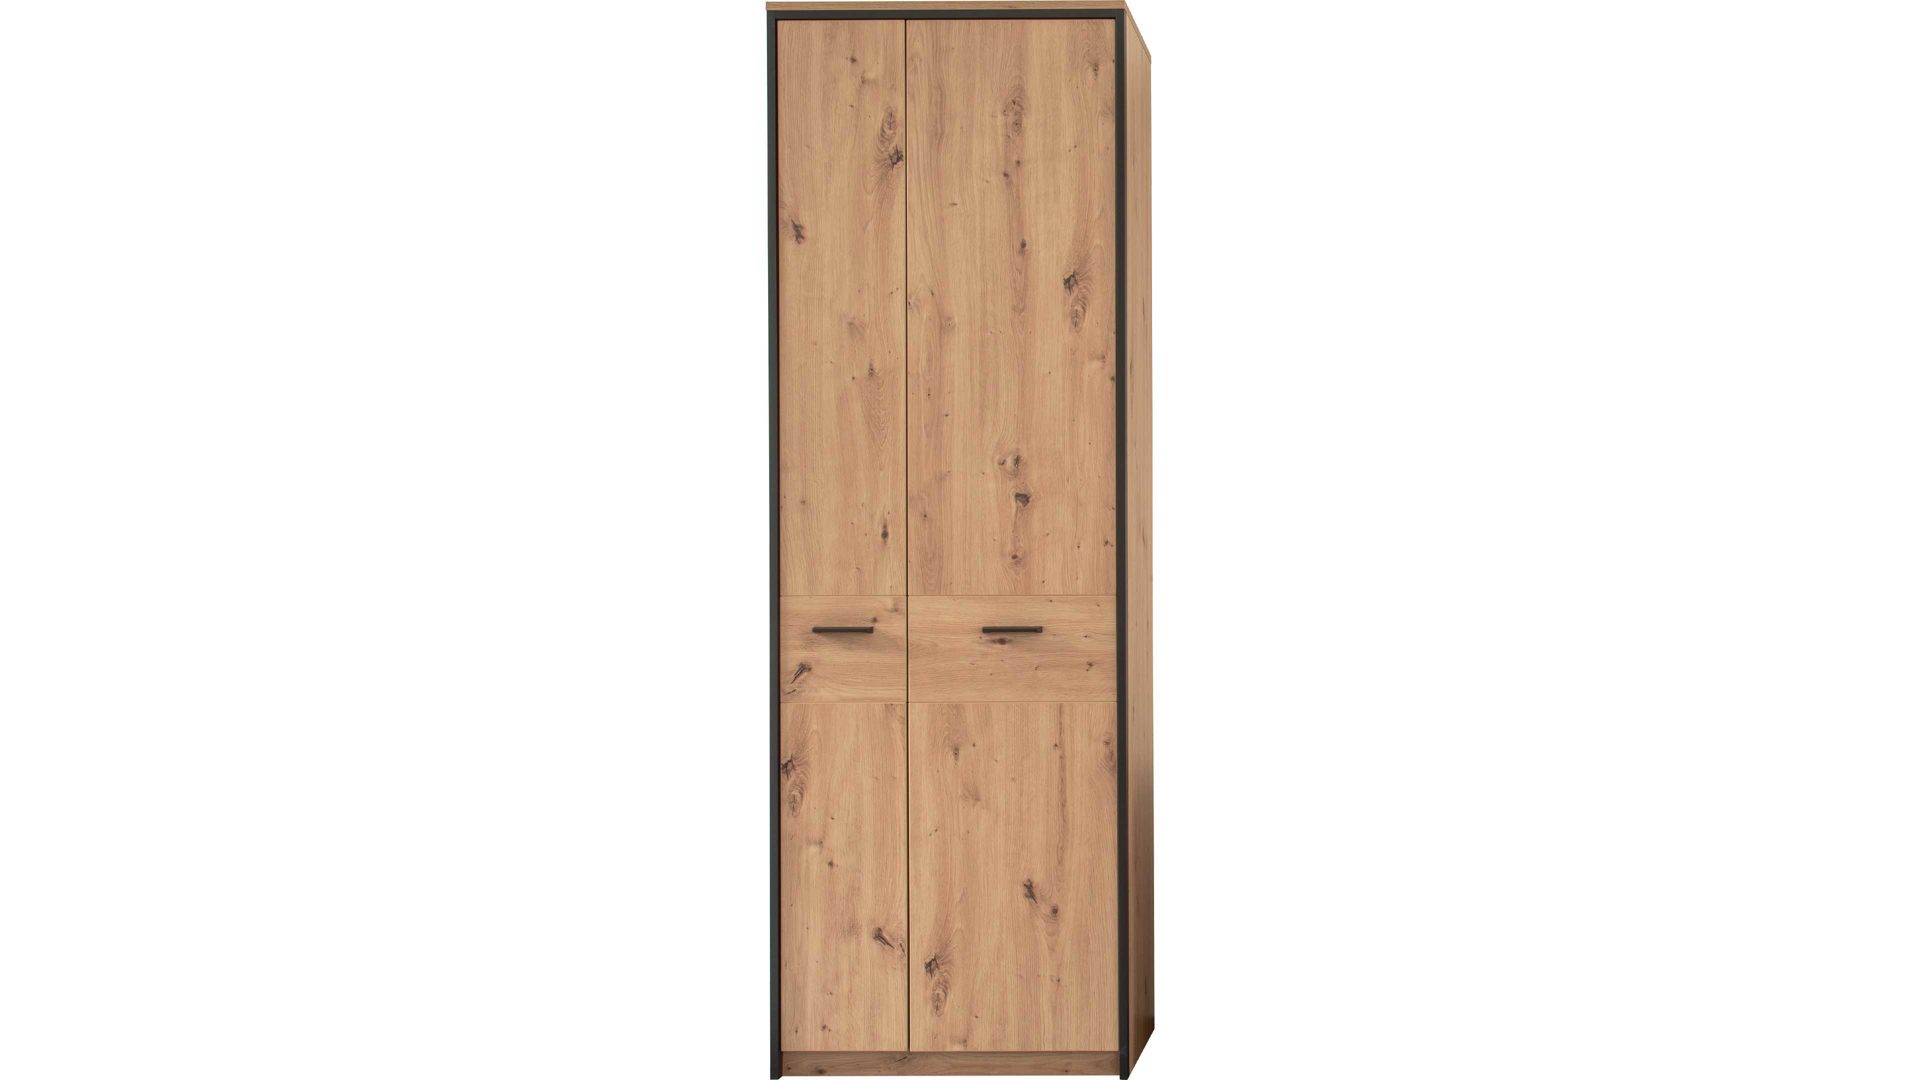 Garderobenschrank Mca furniture aus Holz in Holzfarben Garderobenserie Bergen – Garderobenschrank Balkeneiche & Anthrazit – zwei Türen